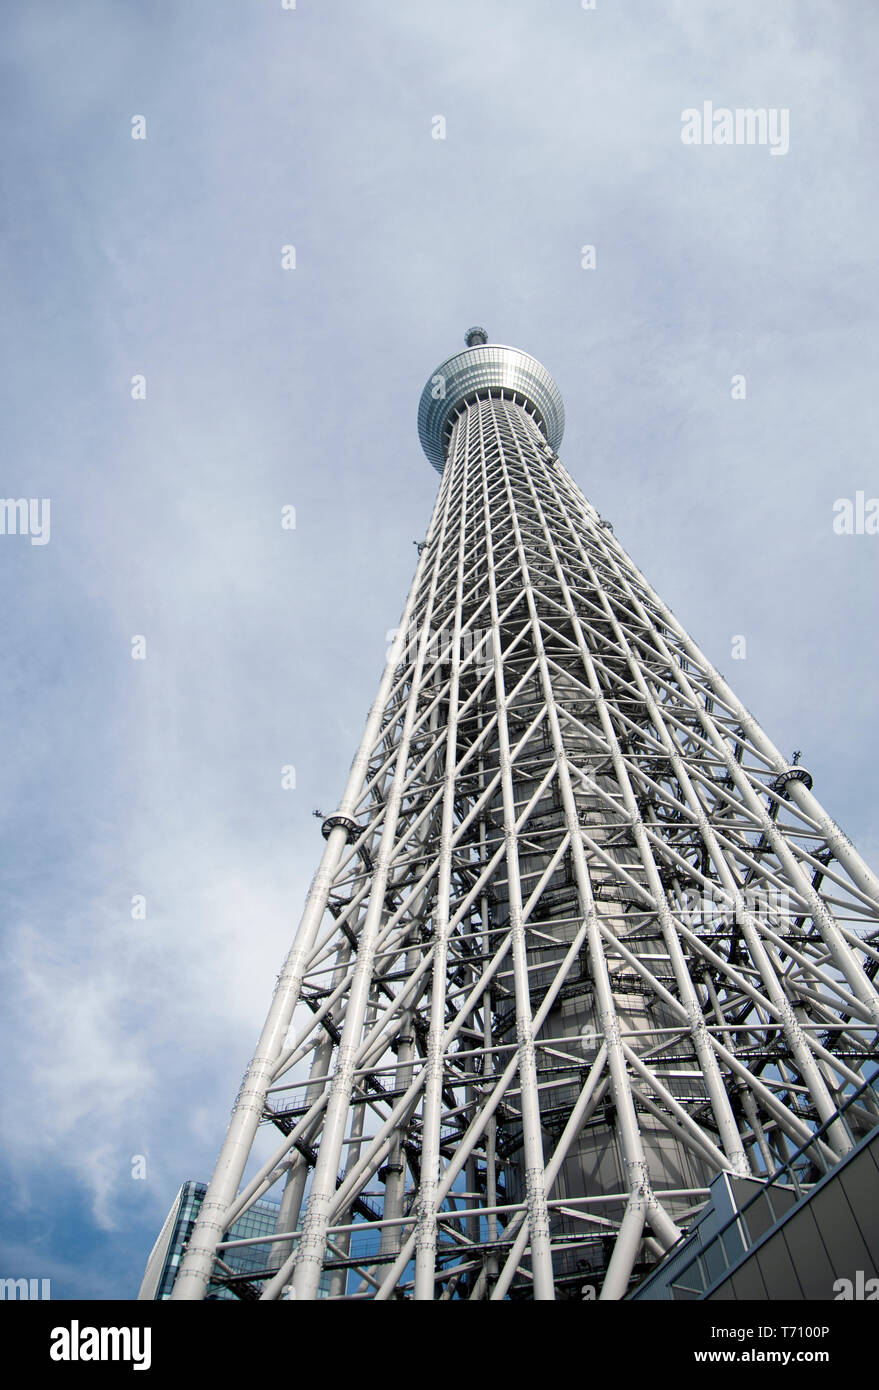 Tokyo Skytree broadcasting e la torre di osservazione visto da sotto. A 634 metri di altezza è il più alte del mondo torre di radiodiffusione. Foto Stock